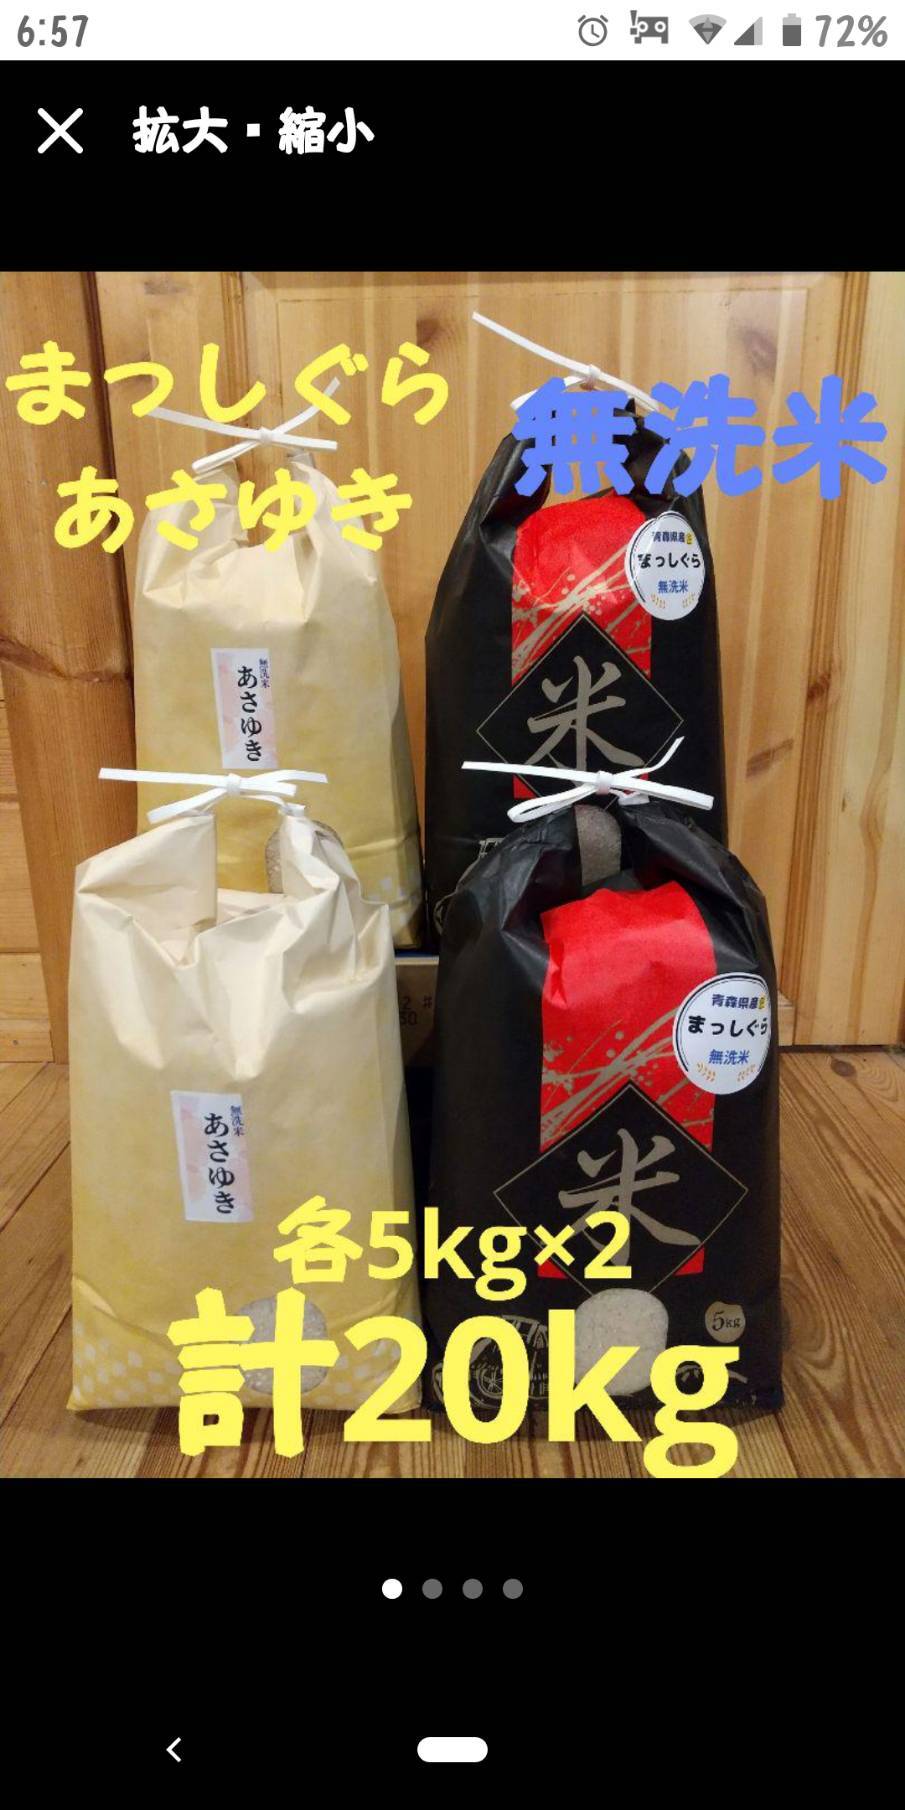 期間限定送料無料 令和4年 新米 青森県産まっしぐら5kg×4計20kg無洗米